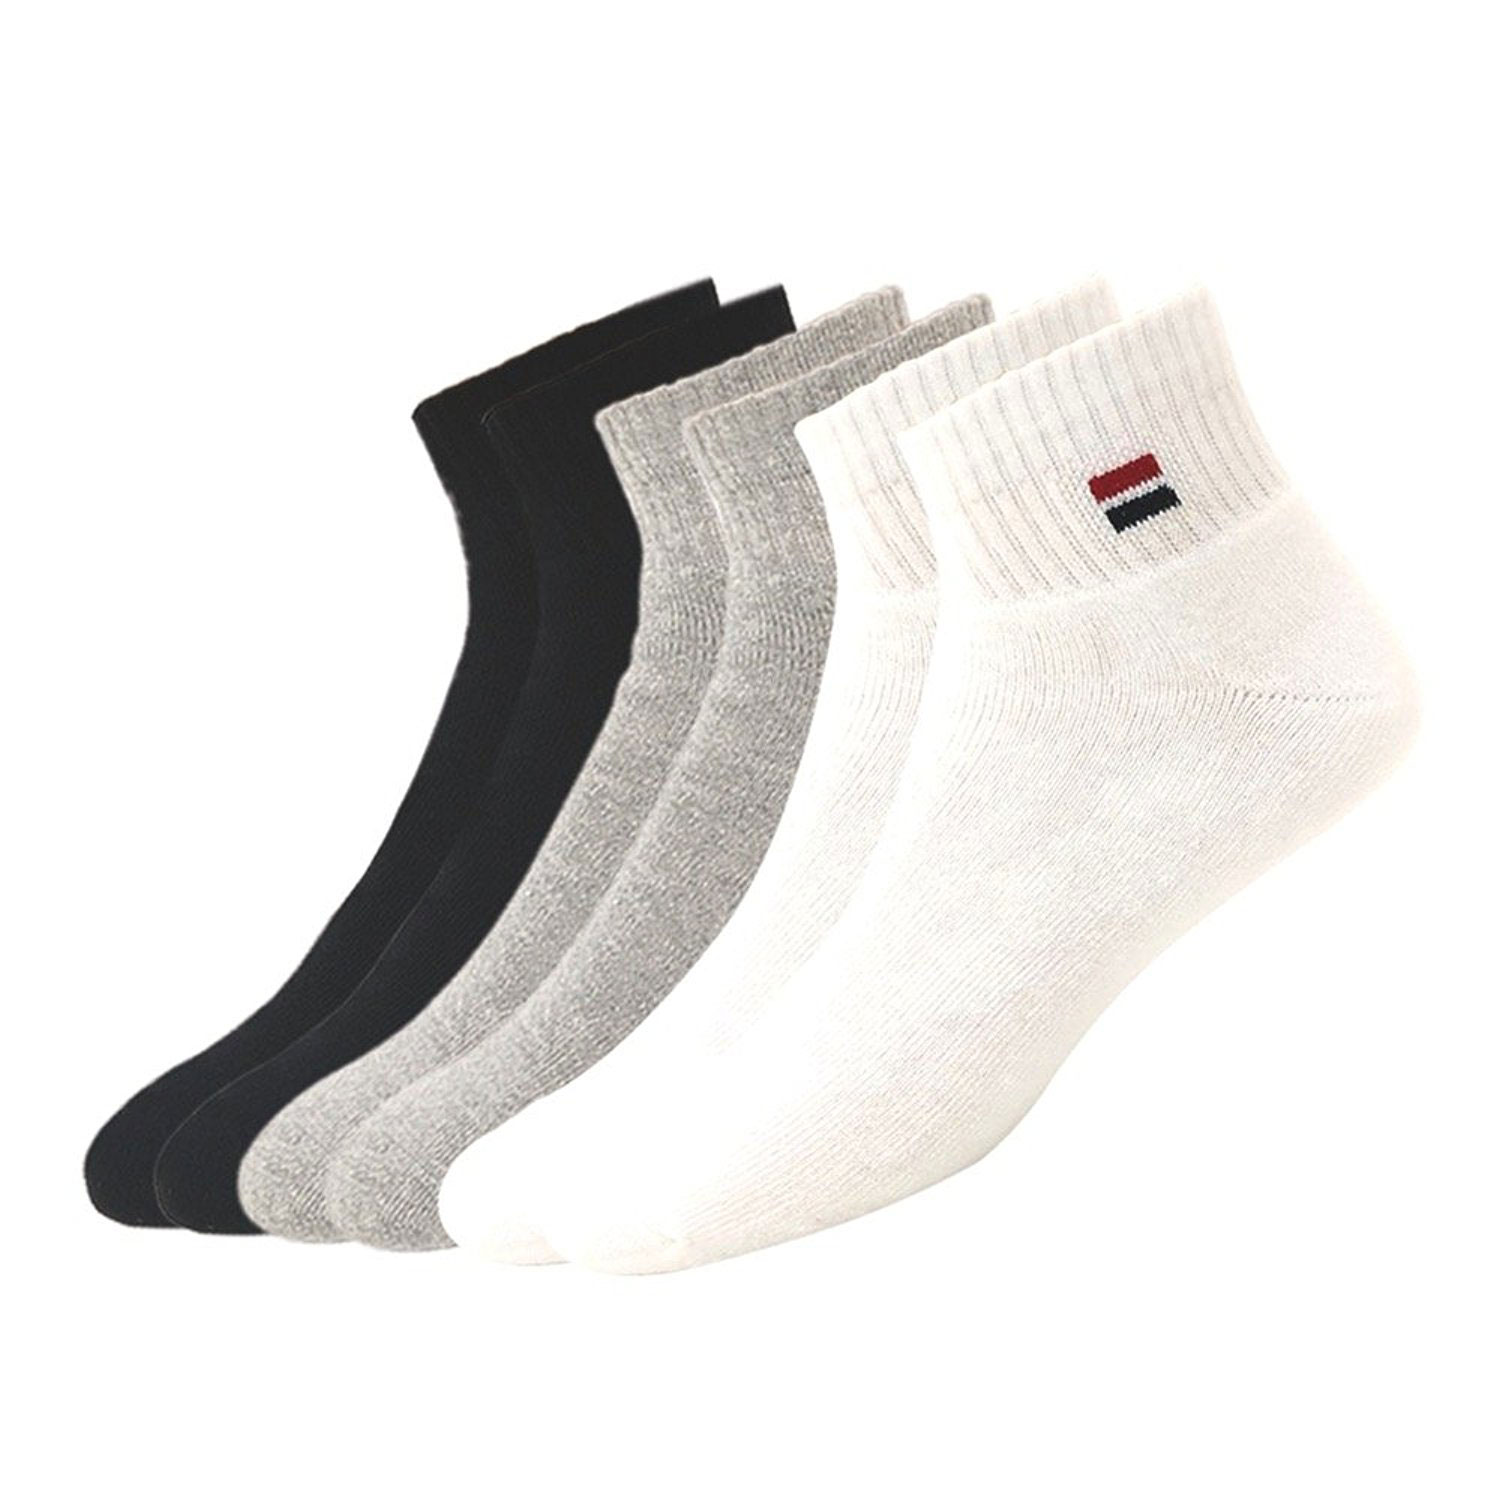 Navy Sport Men's Cotton Socks - Pack of 3 (Multi-Coloured)